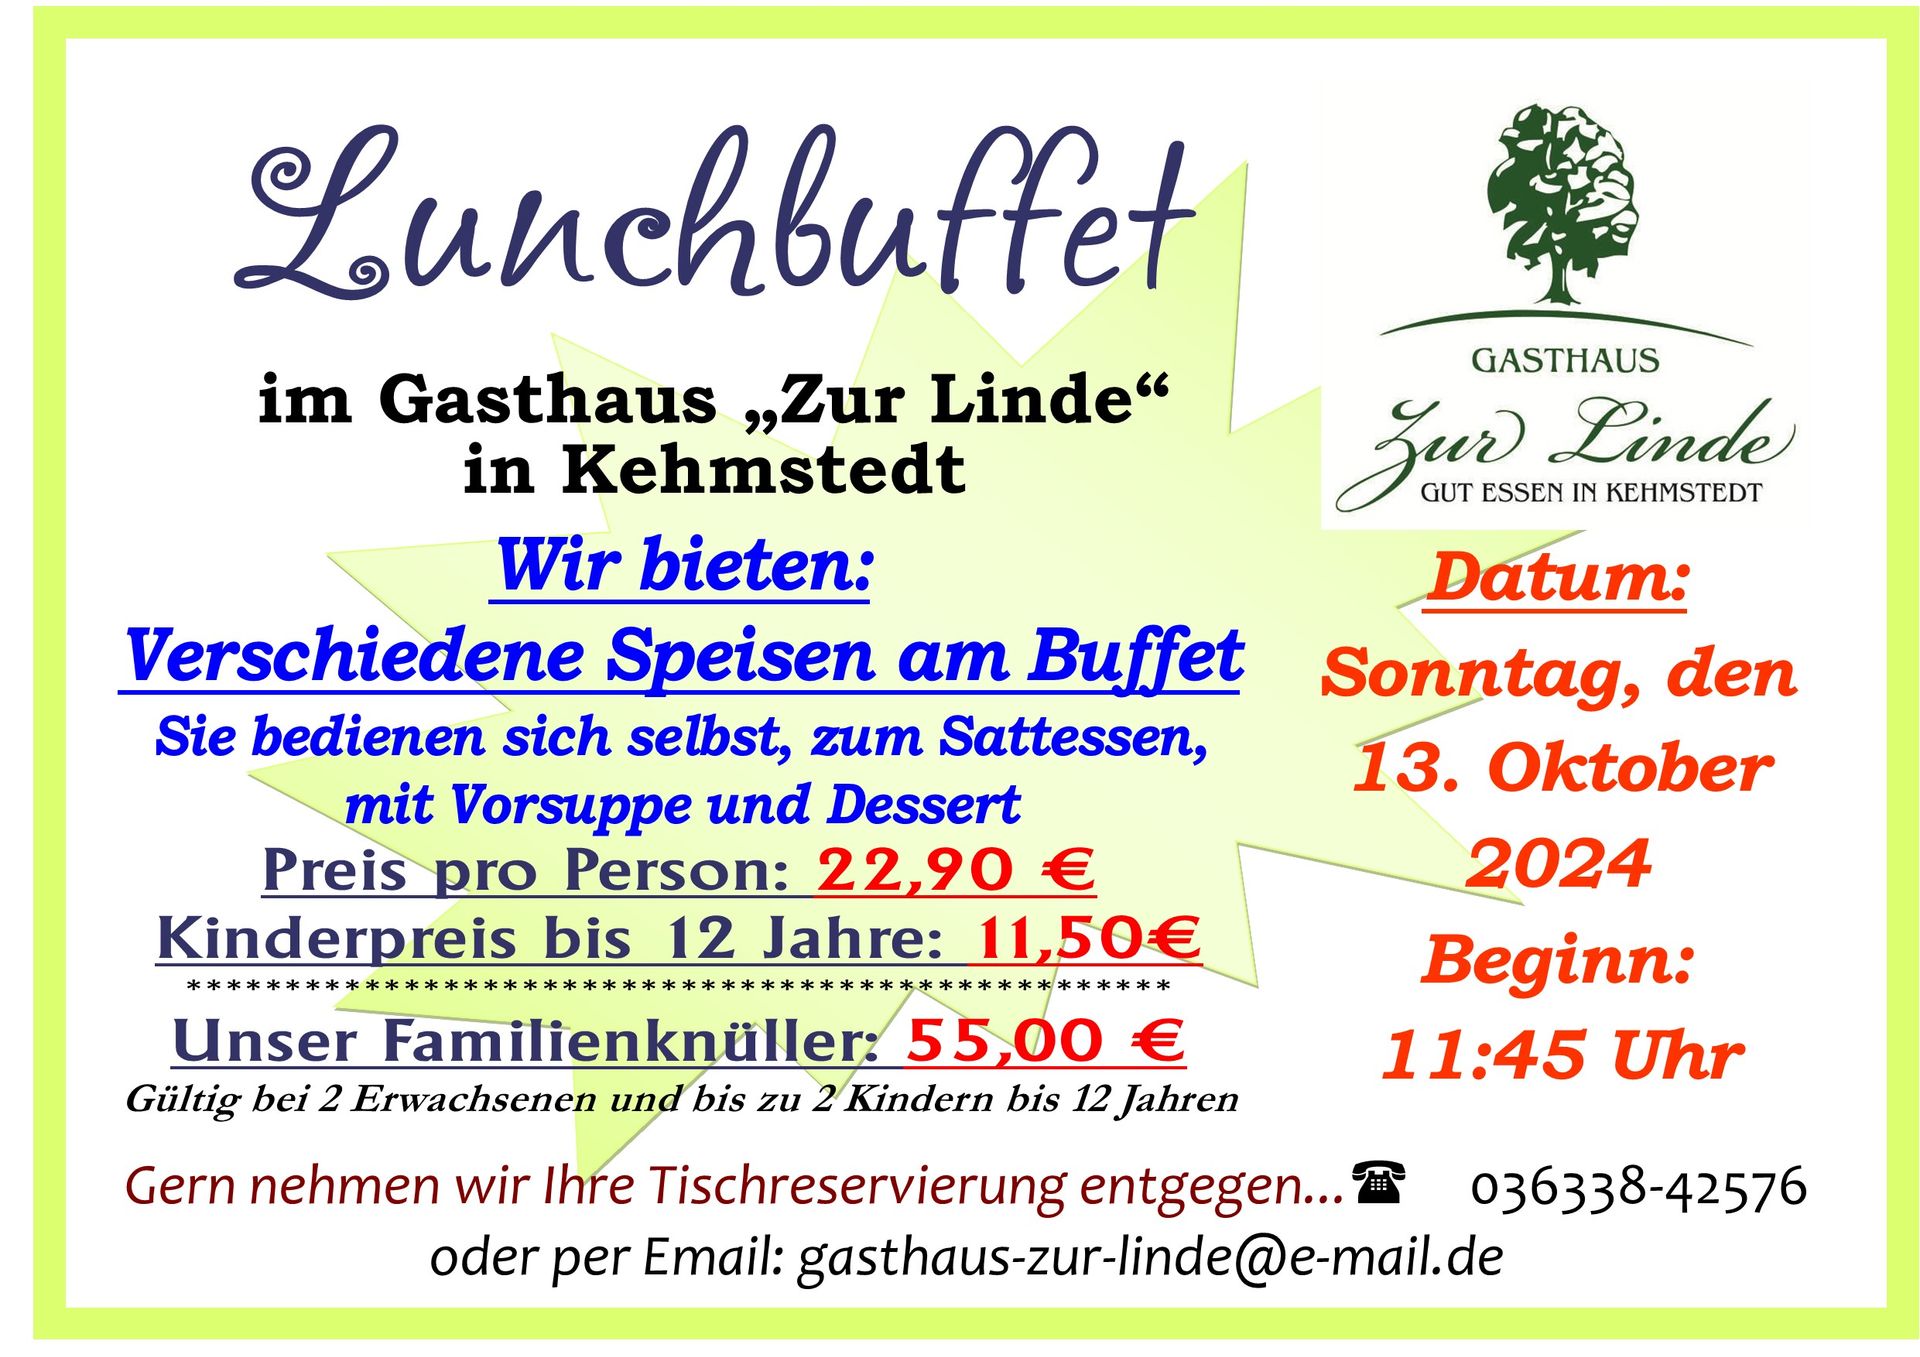 Buffetessen in Kehmstedt